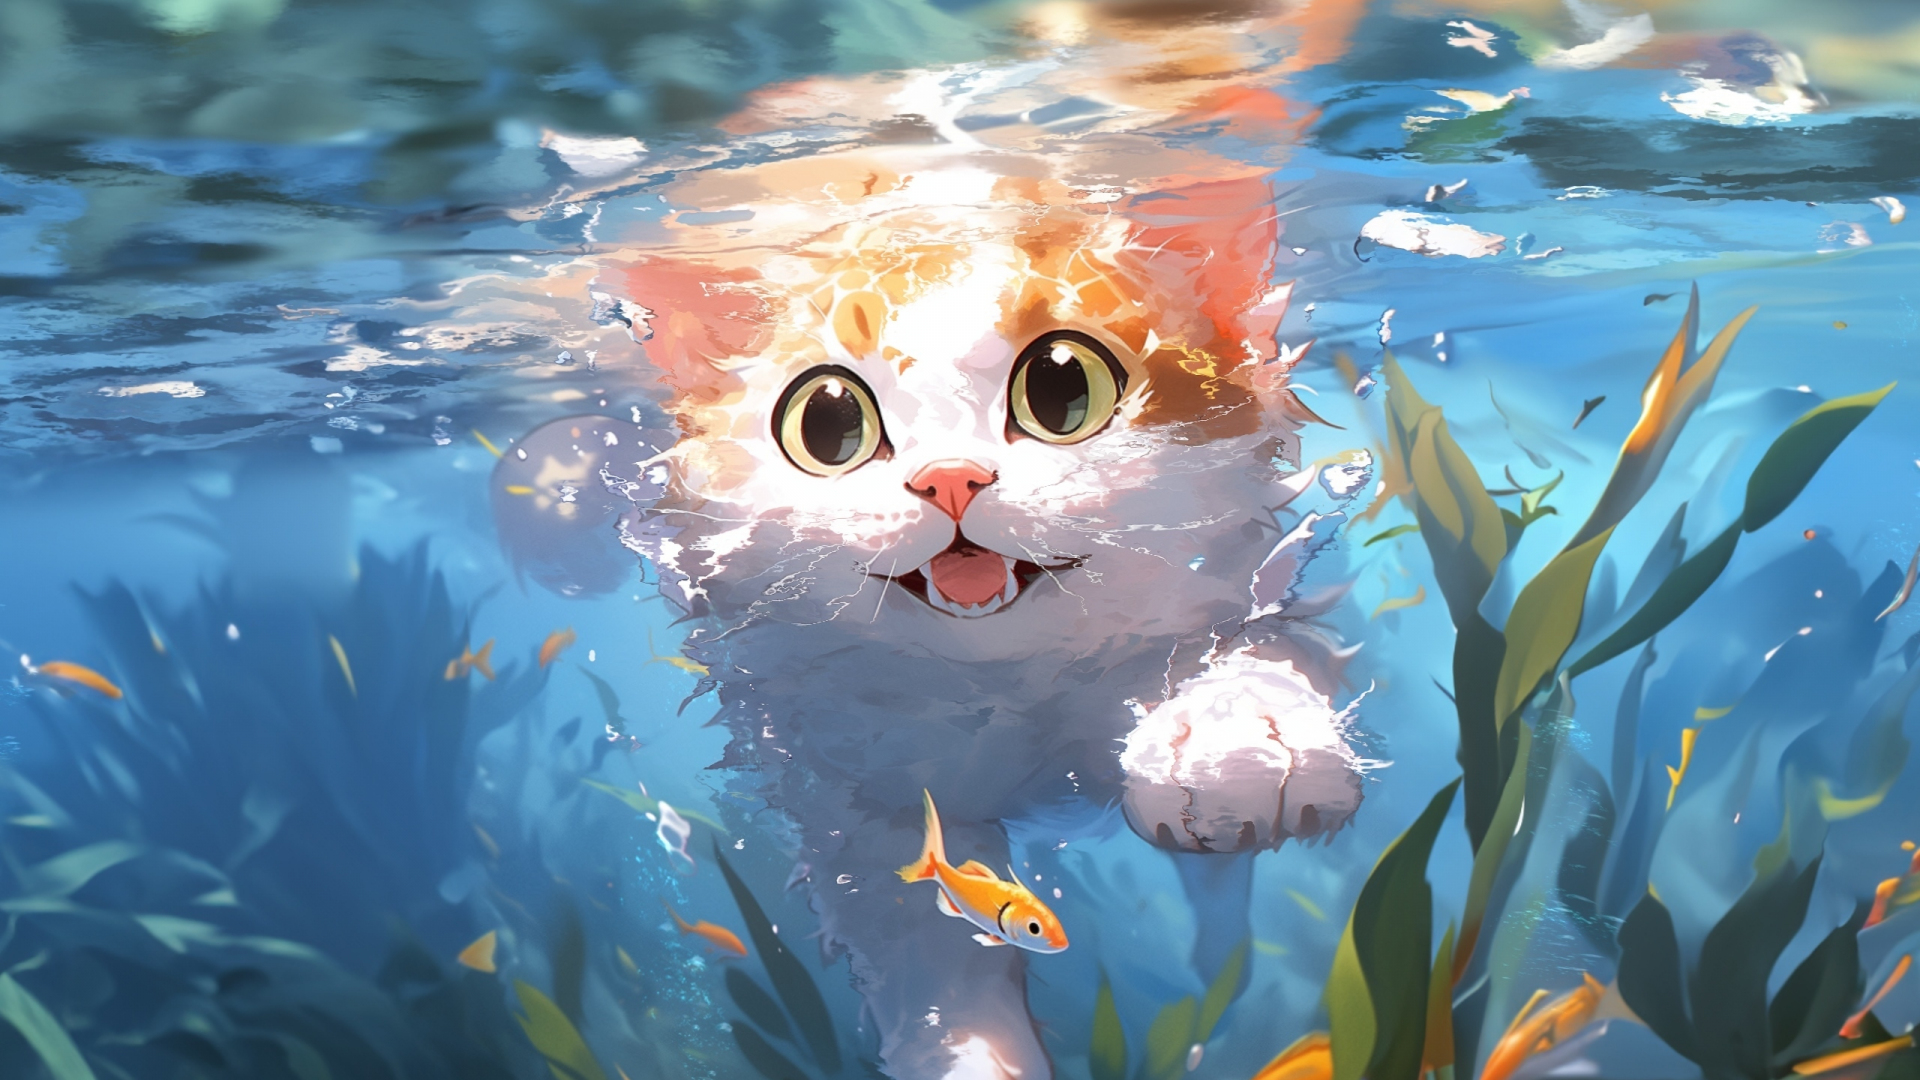 Cute kitten, swim underwater, art, 1920x1080 wallpaper